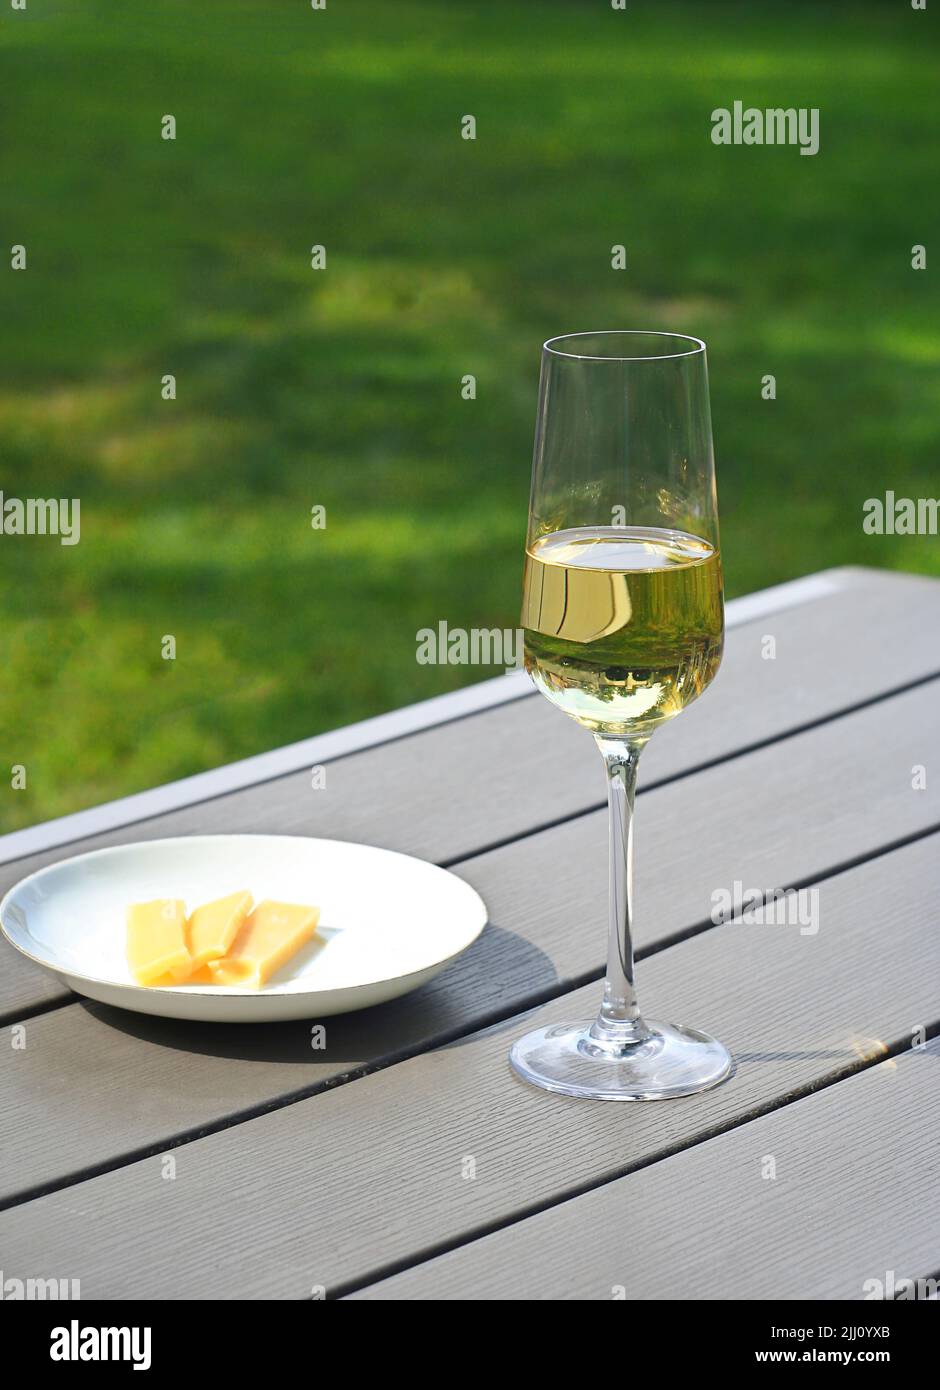 Una copa de vino blanco seco se encuentra sobre una mesa en el jardín. Día de verano Foto de stock